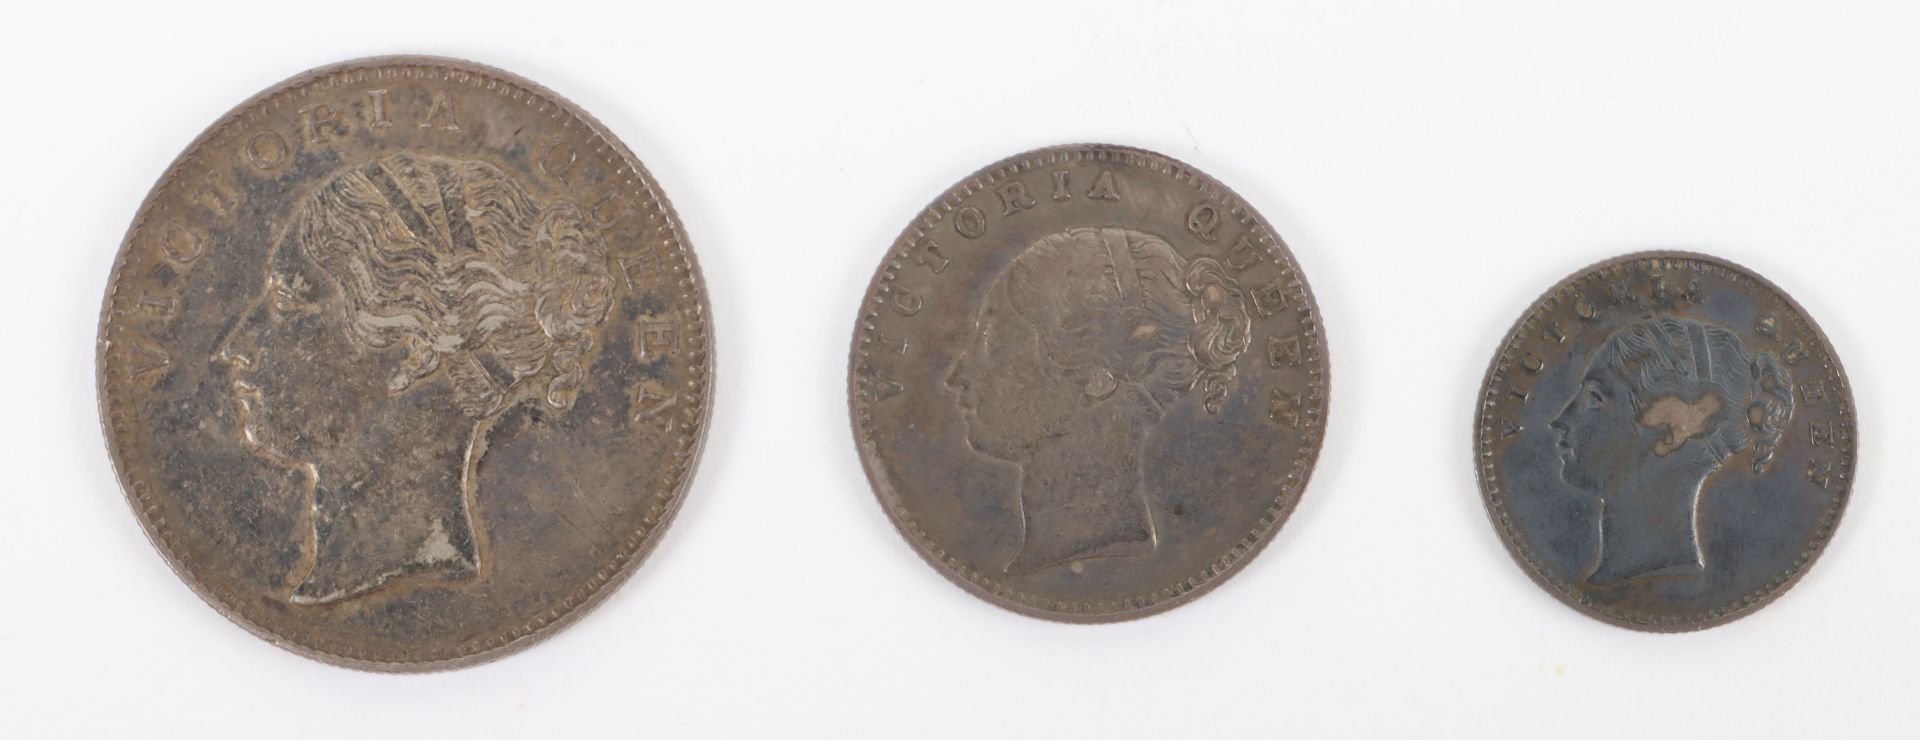 British India, Victoria (1837-1901), One Rupee, Half Rupee and Quarter Rupee, 1840,